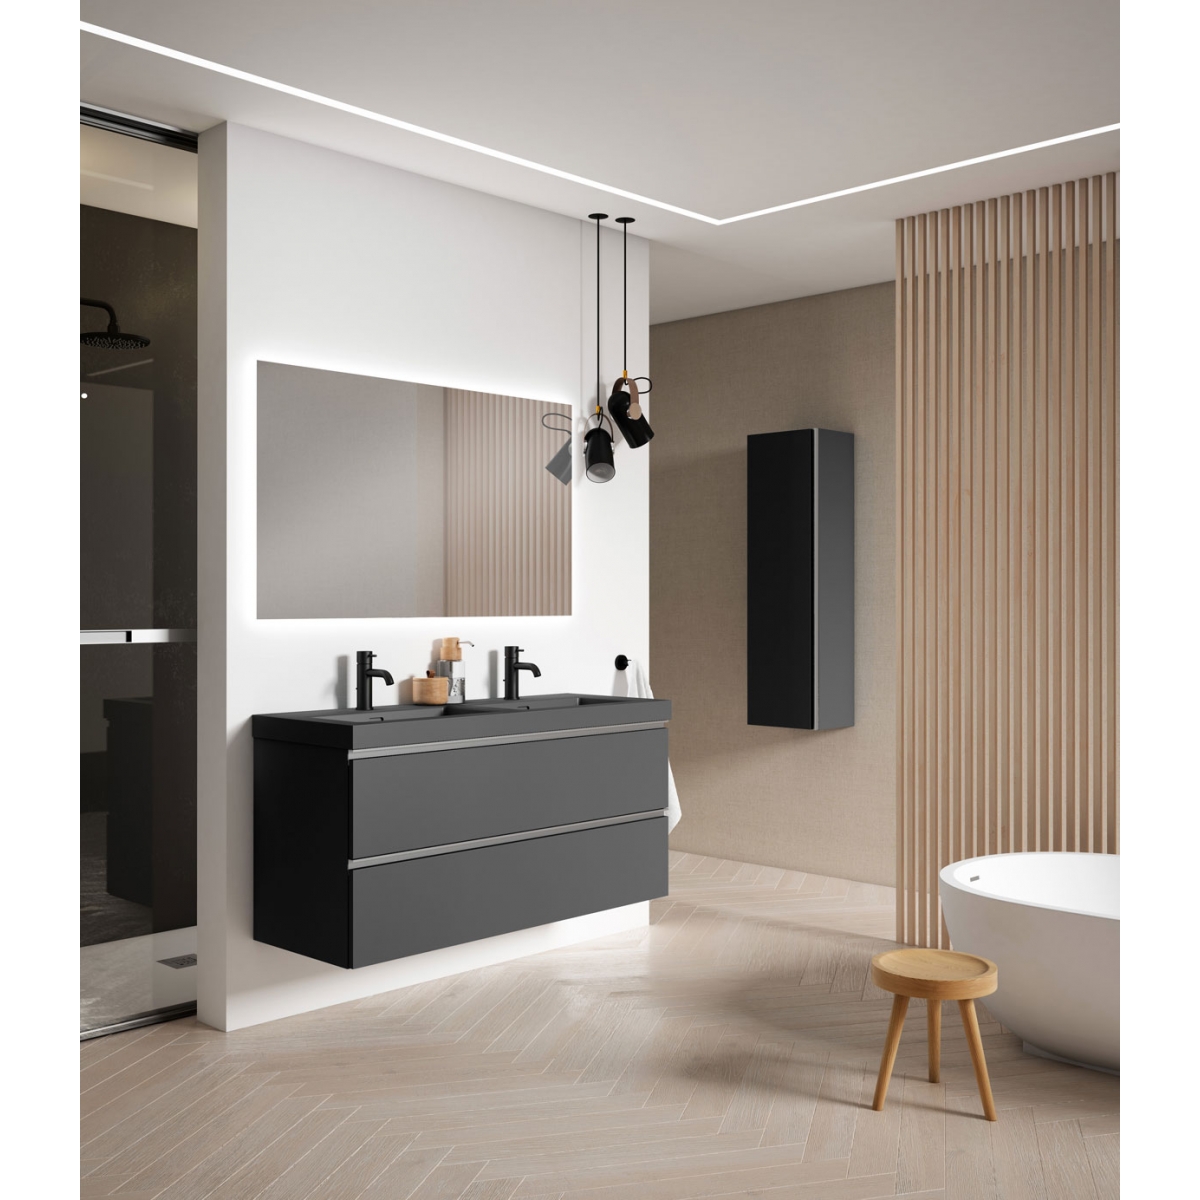 Móvel de casa de banho suspenso modelo Granada5 de 120 cm com lavatório integrado em cor de cinza